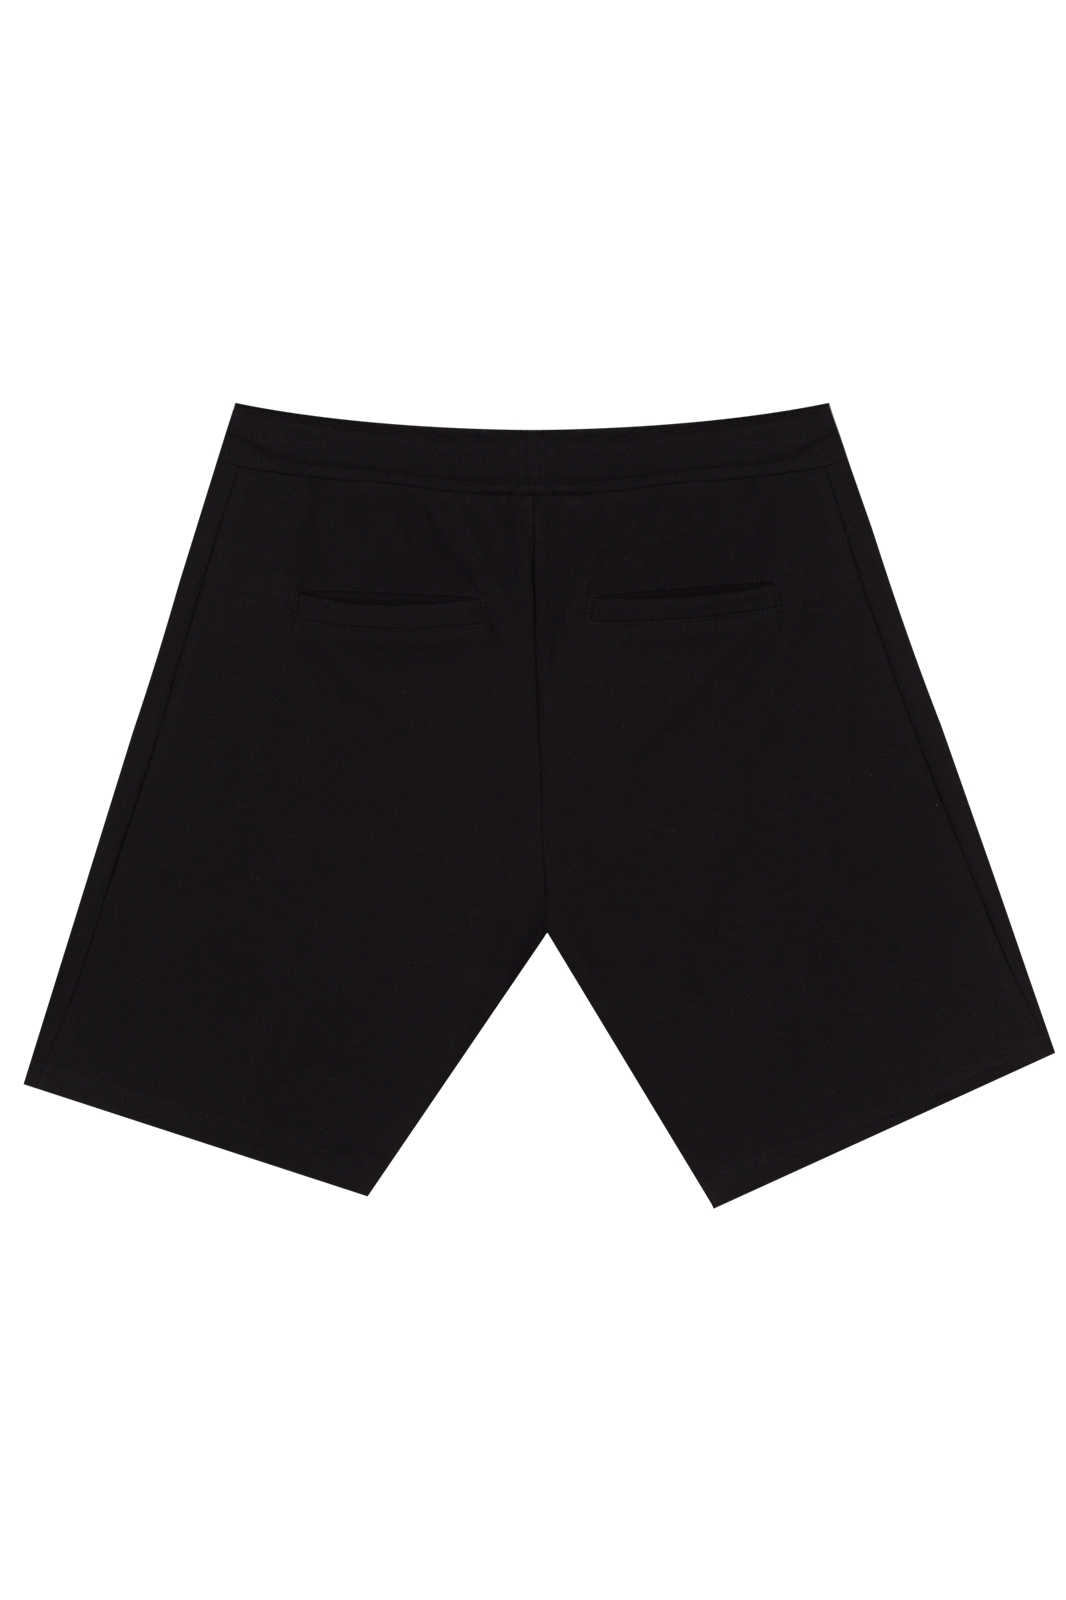 Basic Black Shorts for Men